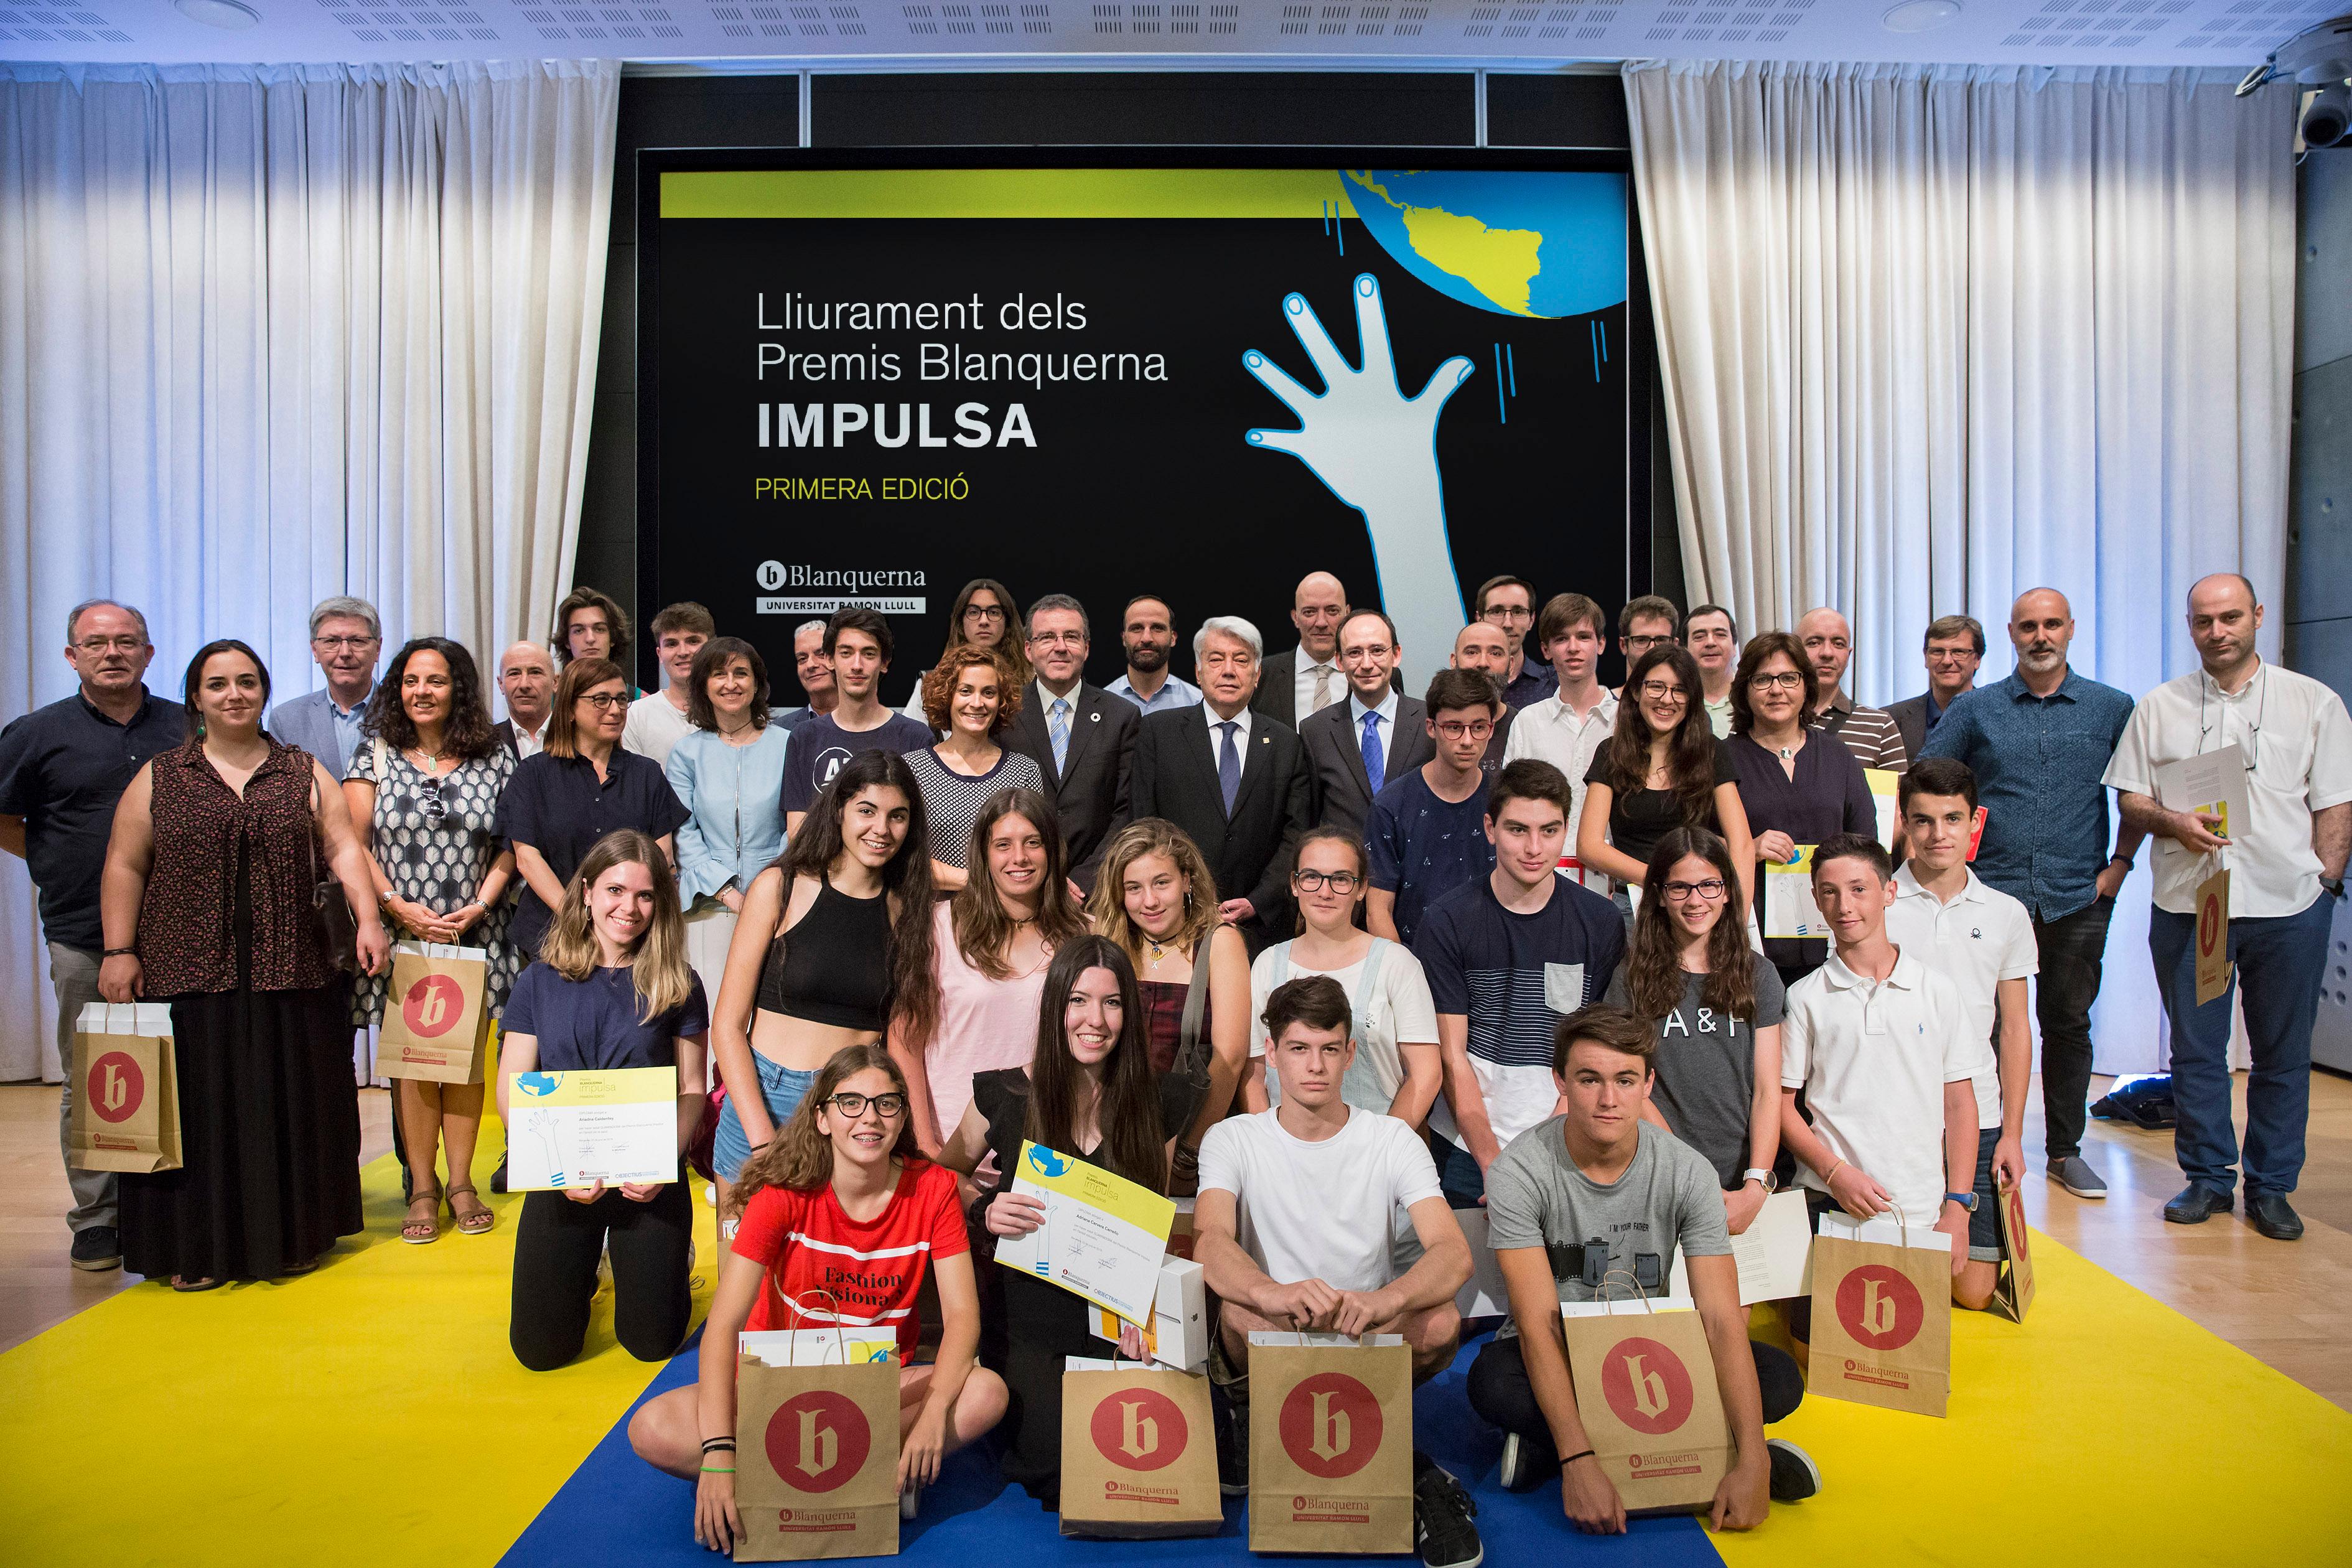 La Escuela Pia de Caldes de Montbui, la Escuela Thau de Sant Cugat y el Colegio Sant Ramon Nonat de Collblanc son los ganadores de la primera edición de los Premios Blanquerna Impulsa